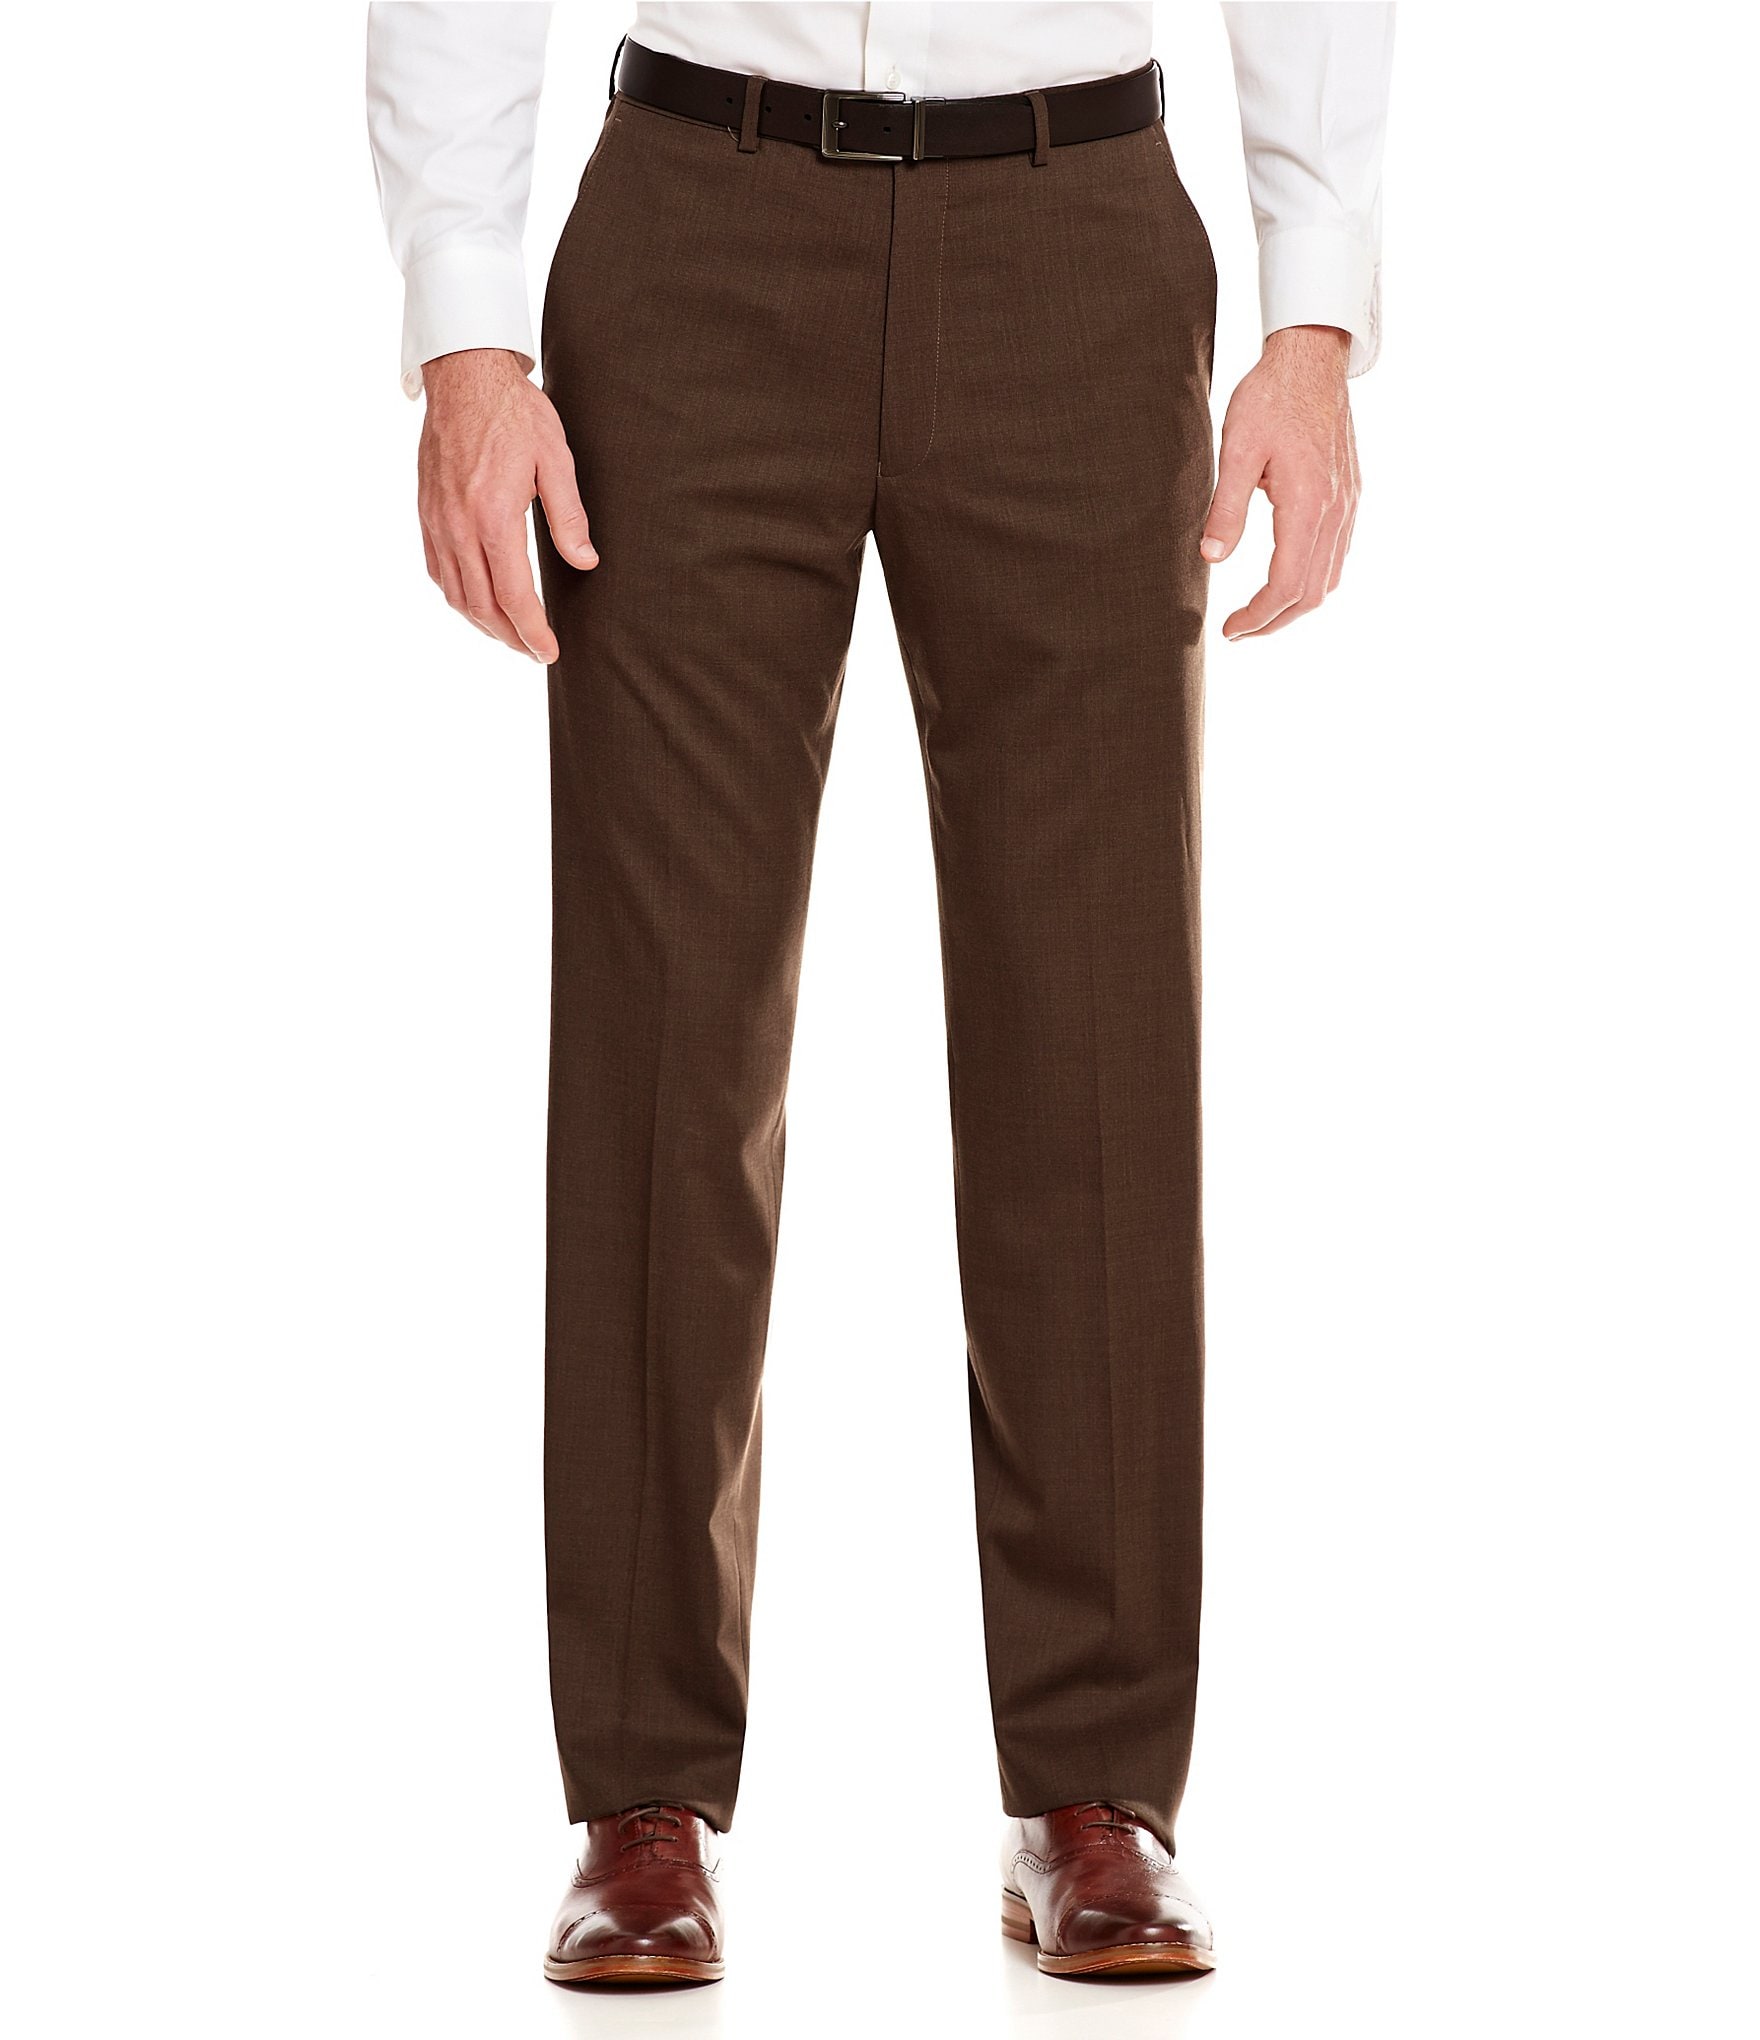 Brown Men's Dress Pants | Dillard's